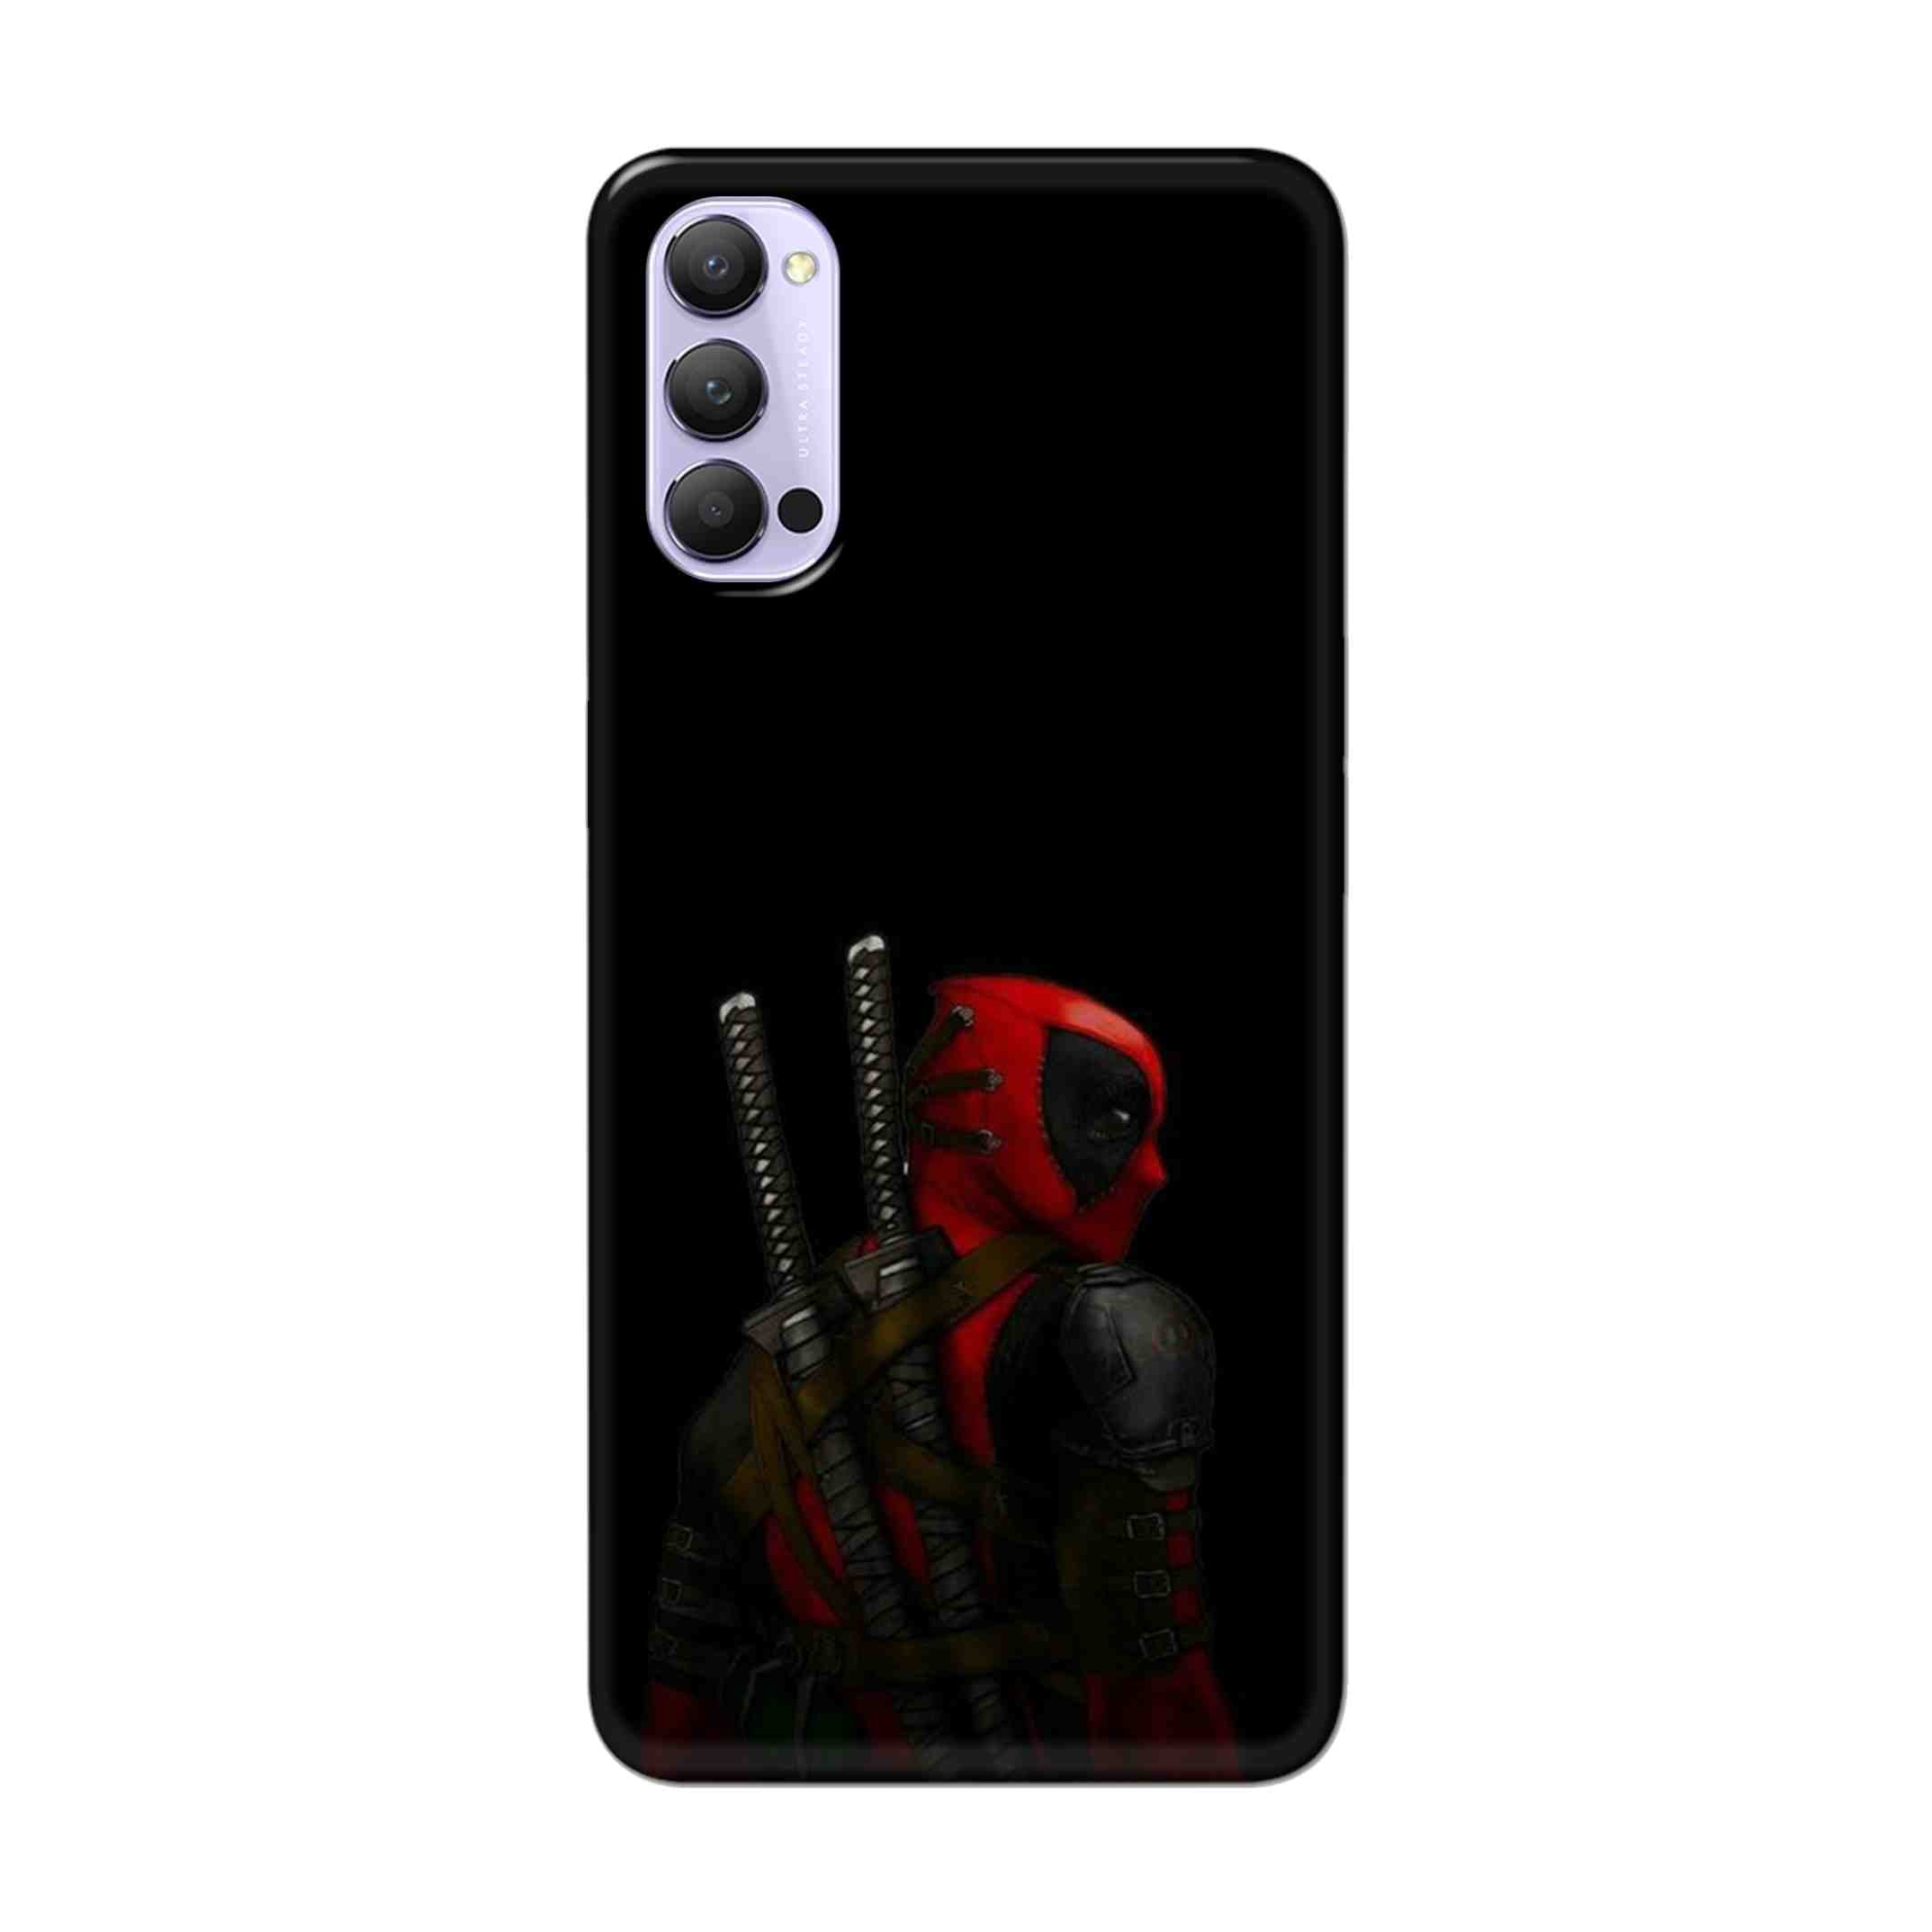 Buy Deadpool Hard Back Mobile Phone Case Cover For Oppo Reno 4 Pro Online